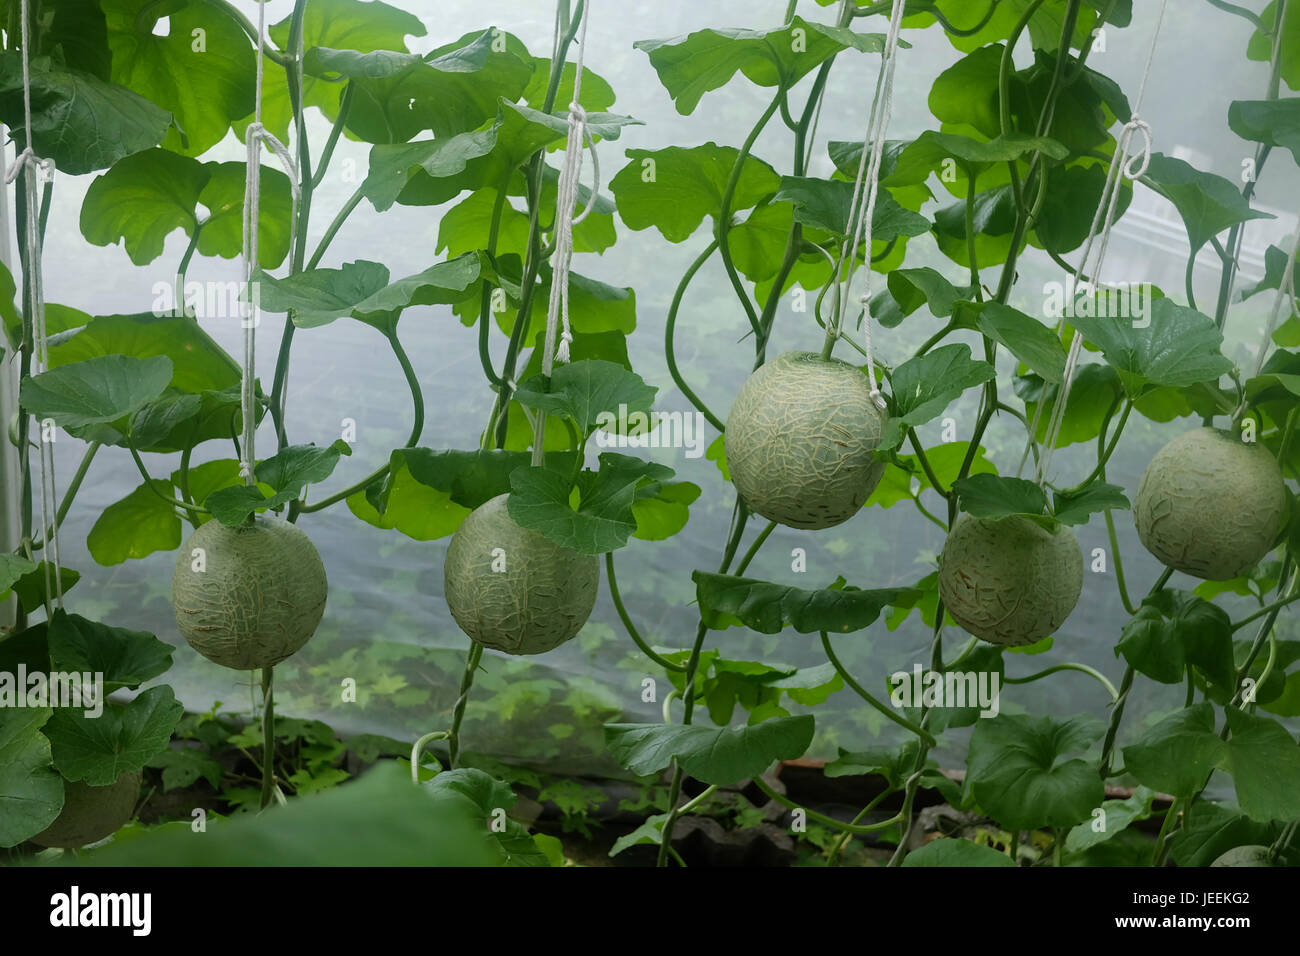 Junge japanische Melonen oder grünen Melonen und Cantaloupe Melonen Pflanzen  im Gewächshaus Stockfotografie - Alamy